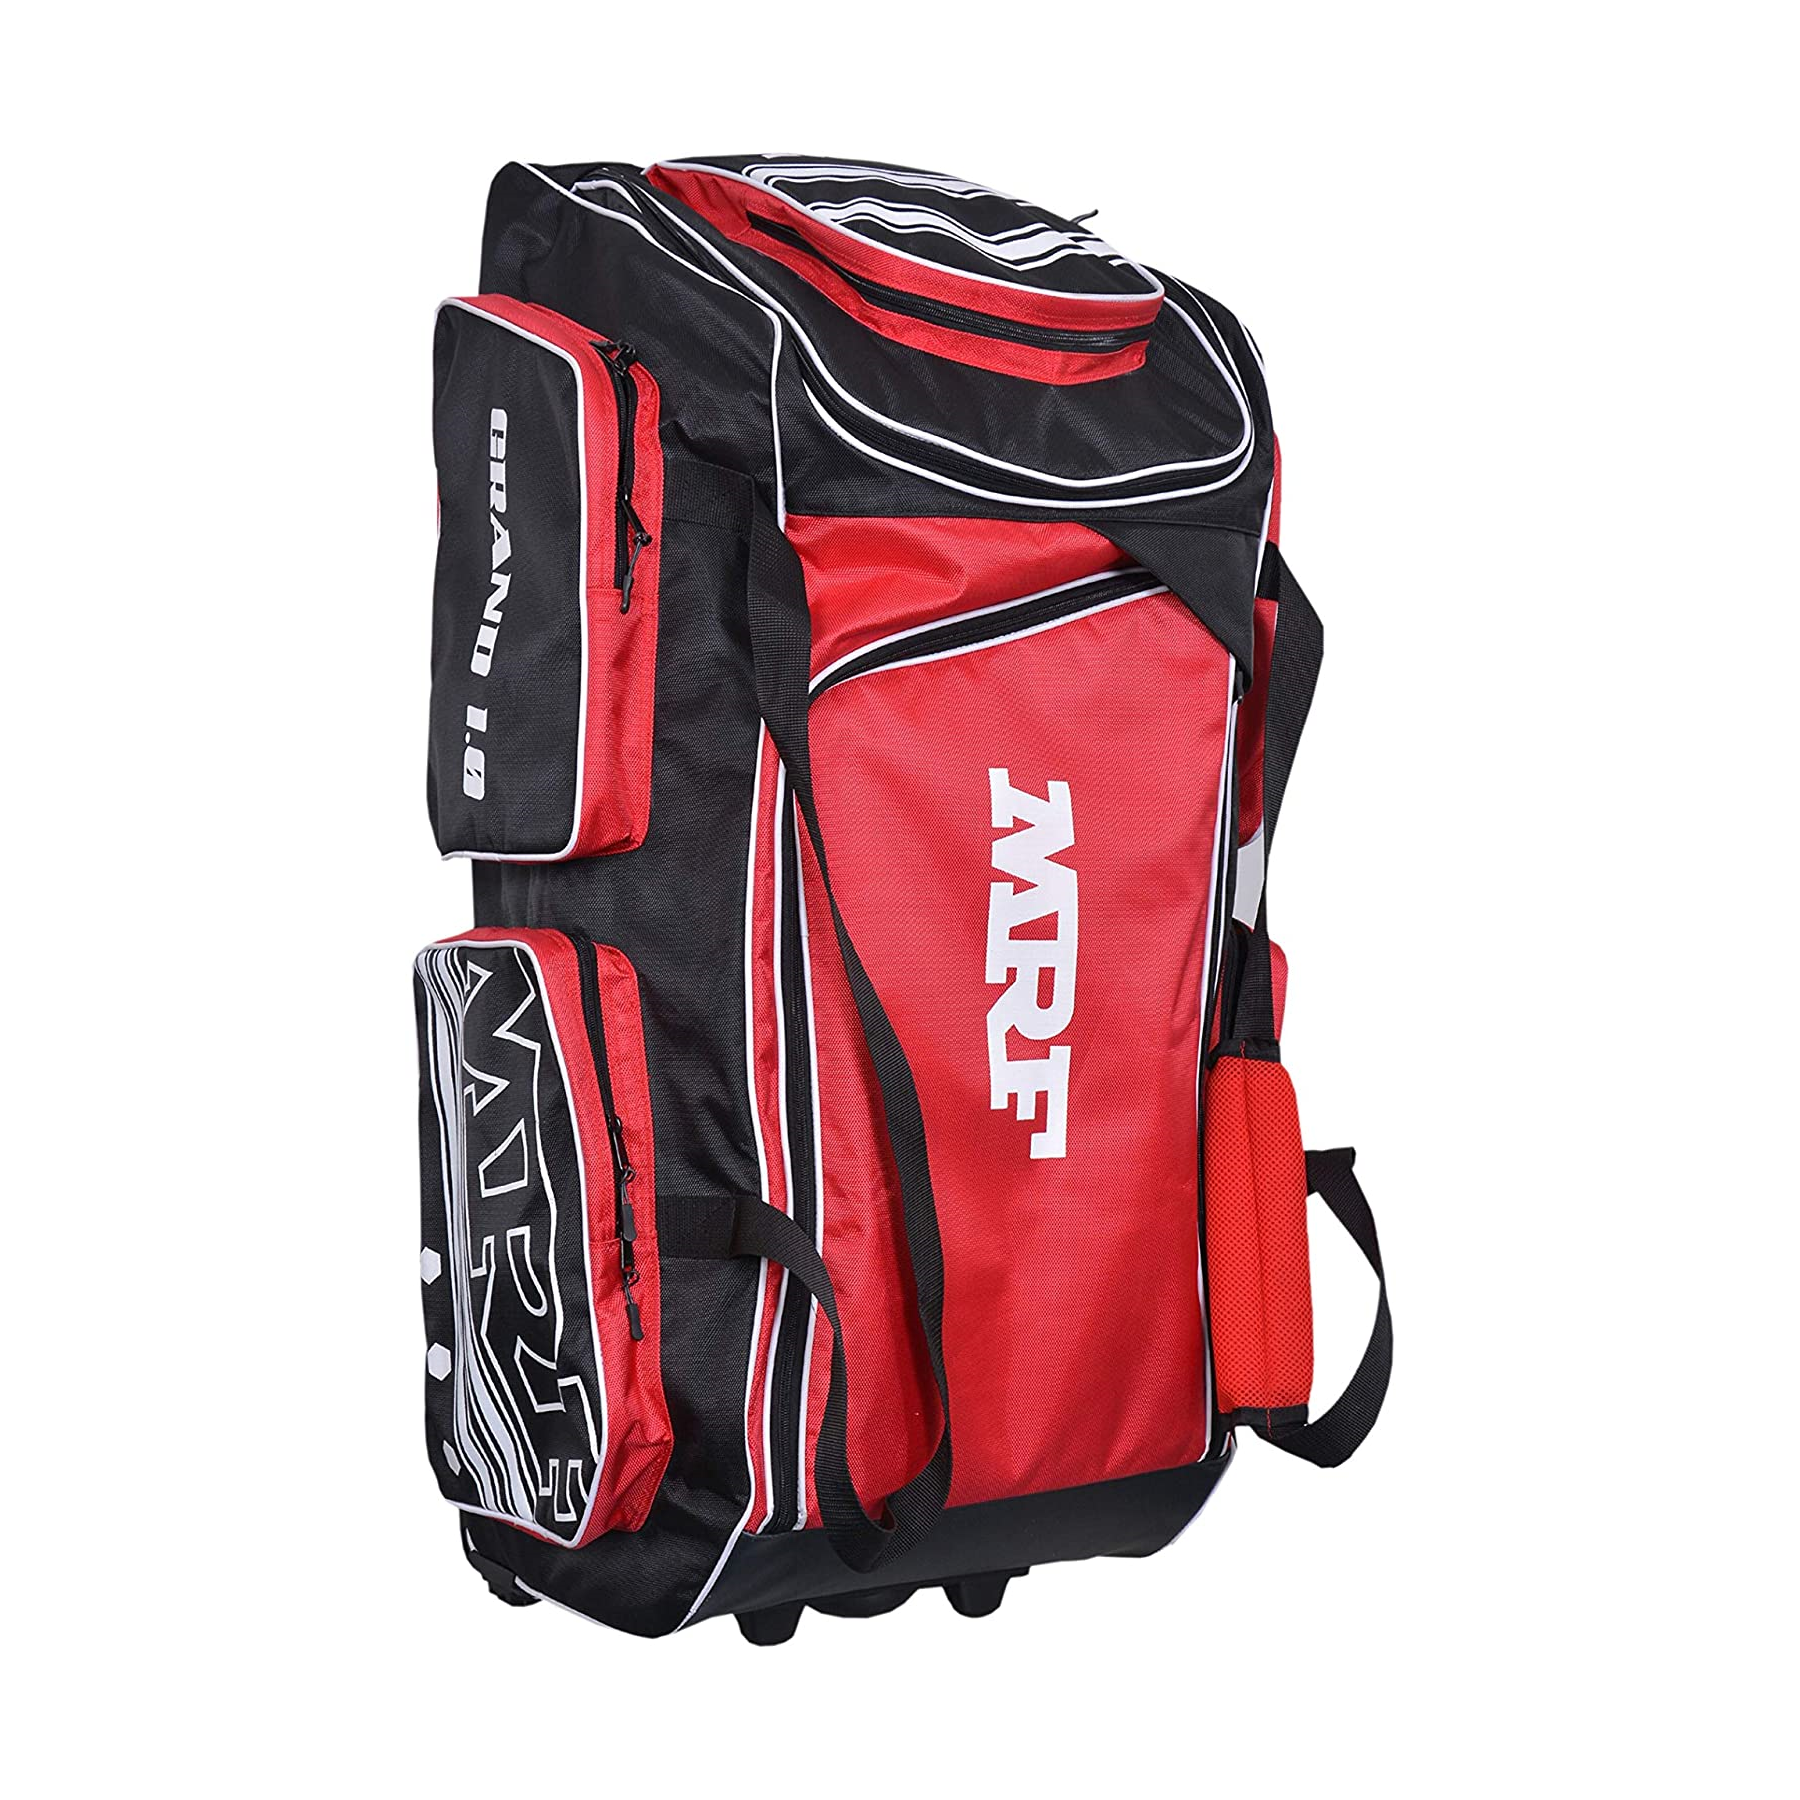 MRF VK 18 Shoulder Cricket Kit Bag Red (Large)